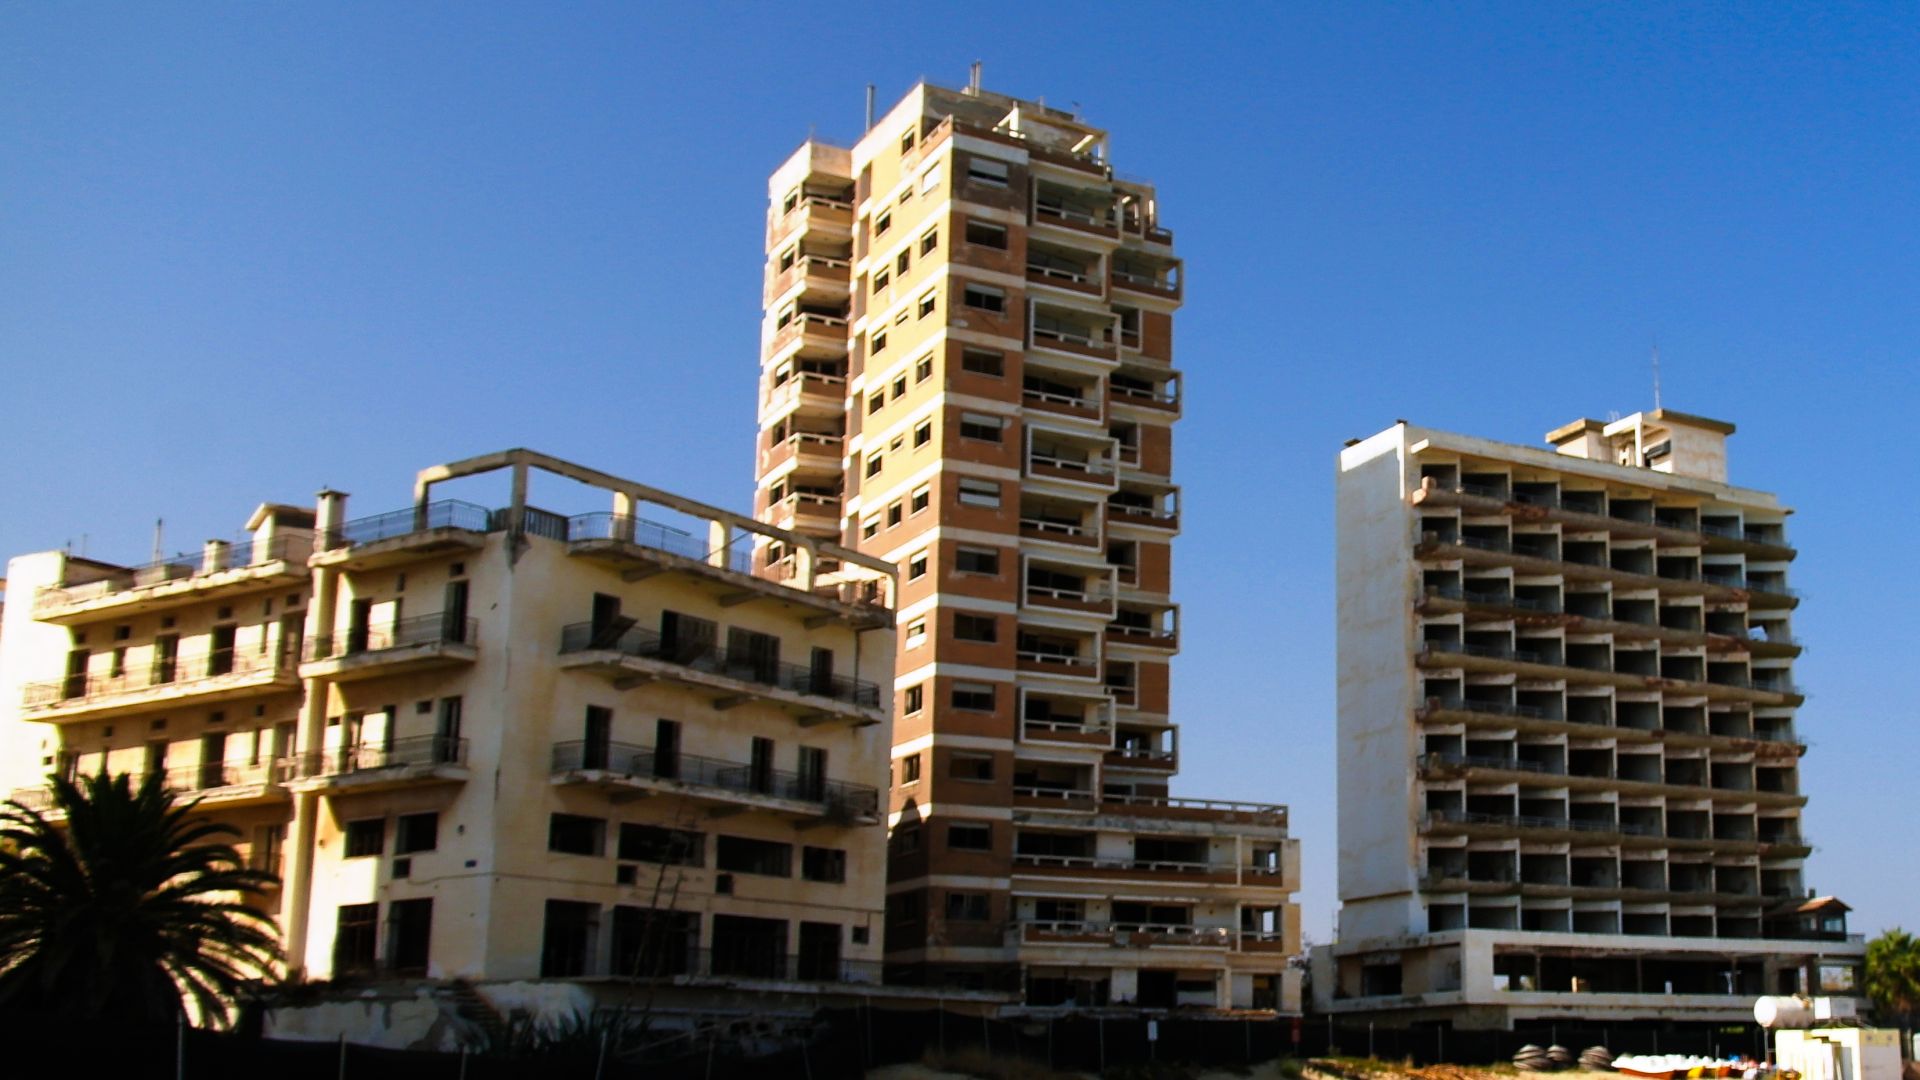 Градът призрак Вароша в Северен Кипър ще бъде съживен и отворен за целия свят